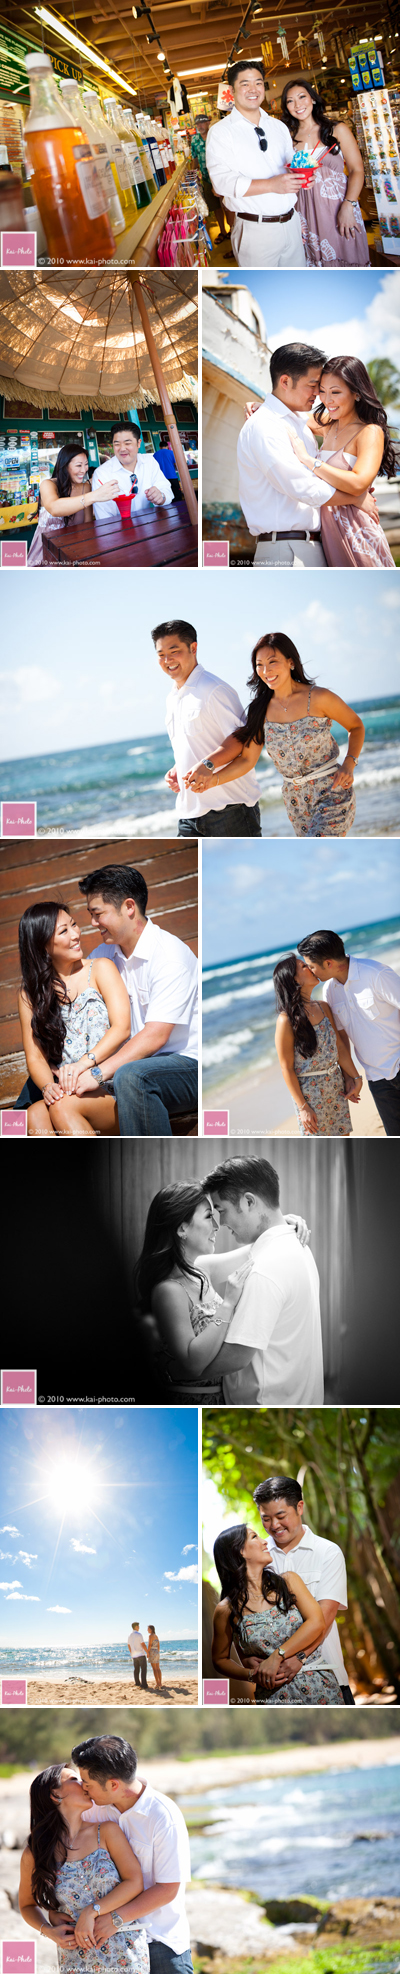 hawaii engagement photos